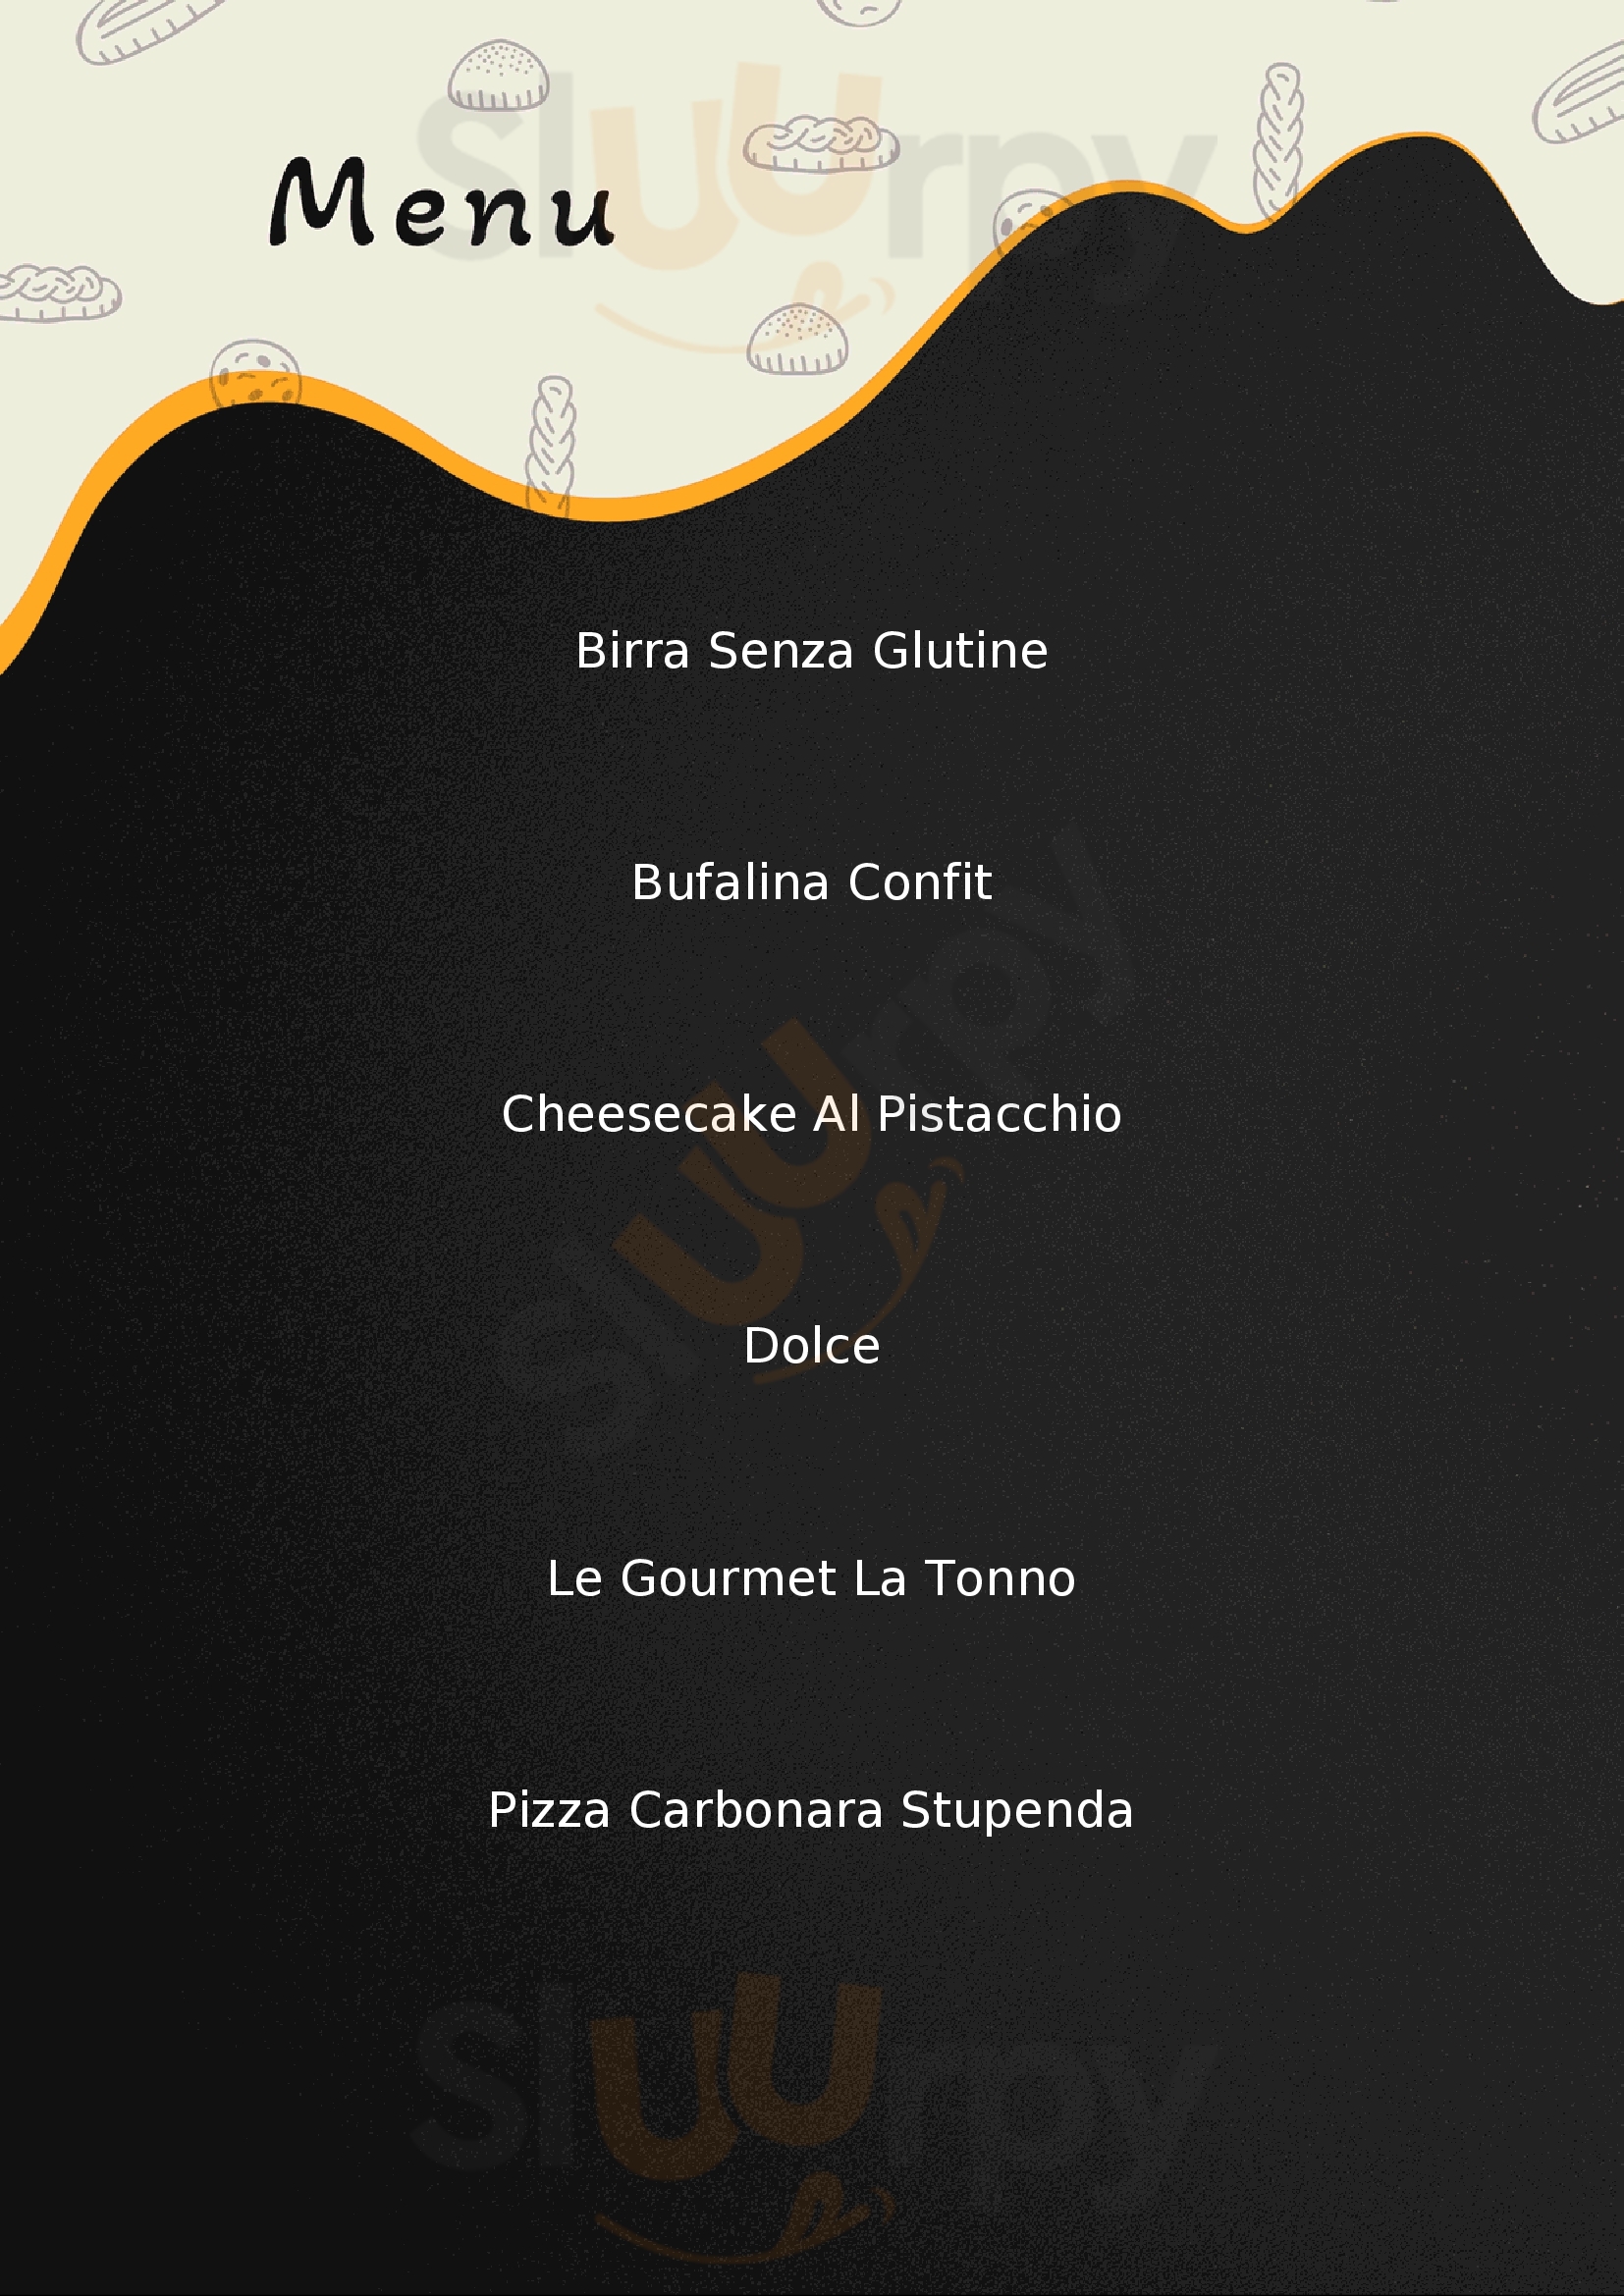 Grano Vivo Pizzeria Pontedera menù 1 pagina